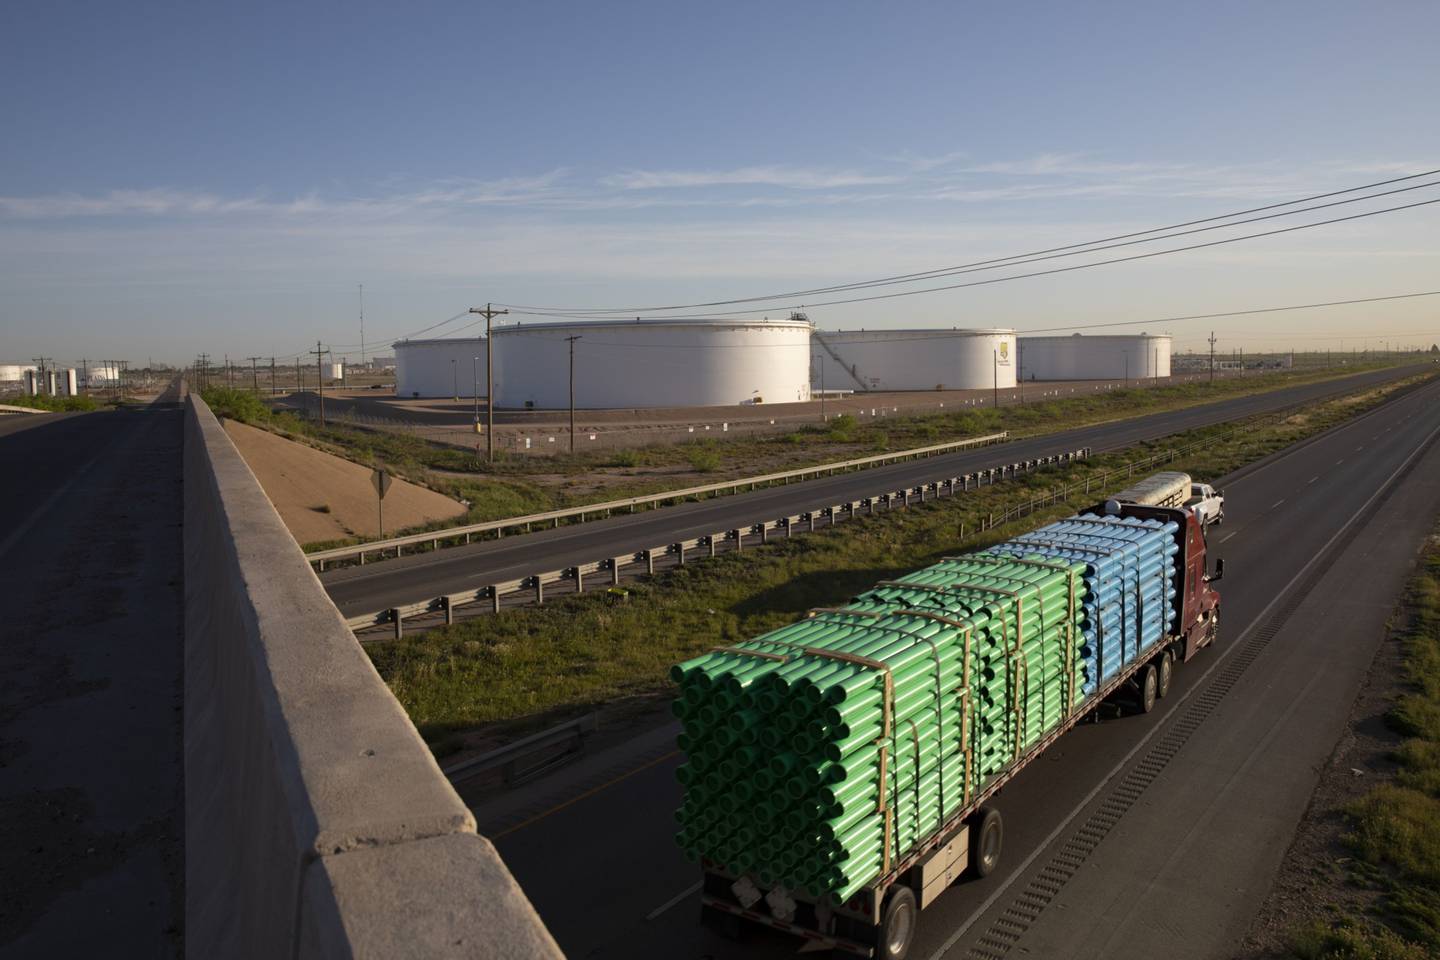 Un camión pasa por los tanques de almacenamiento de crudo en las afueras de Midland, Texas, Estados Unidos, el viernes 24 de abril de 2020.